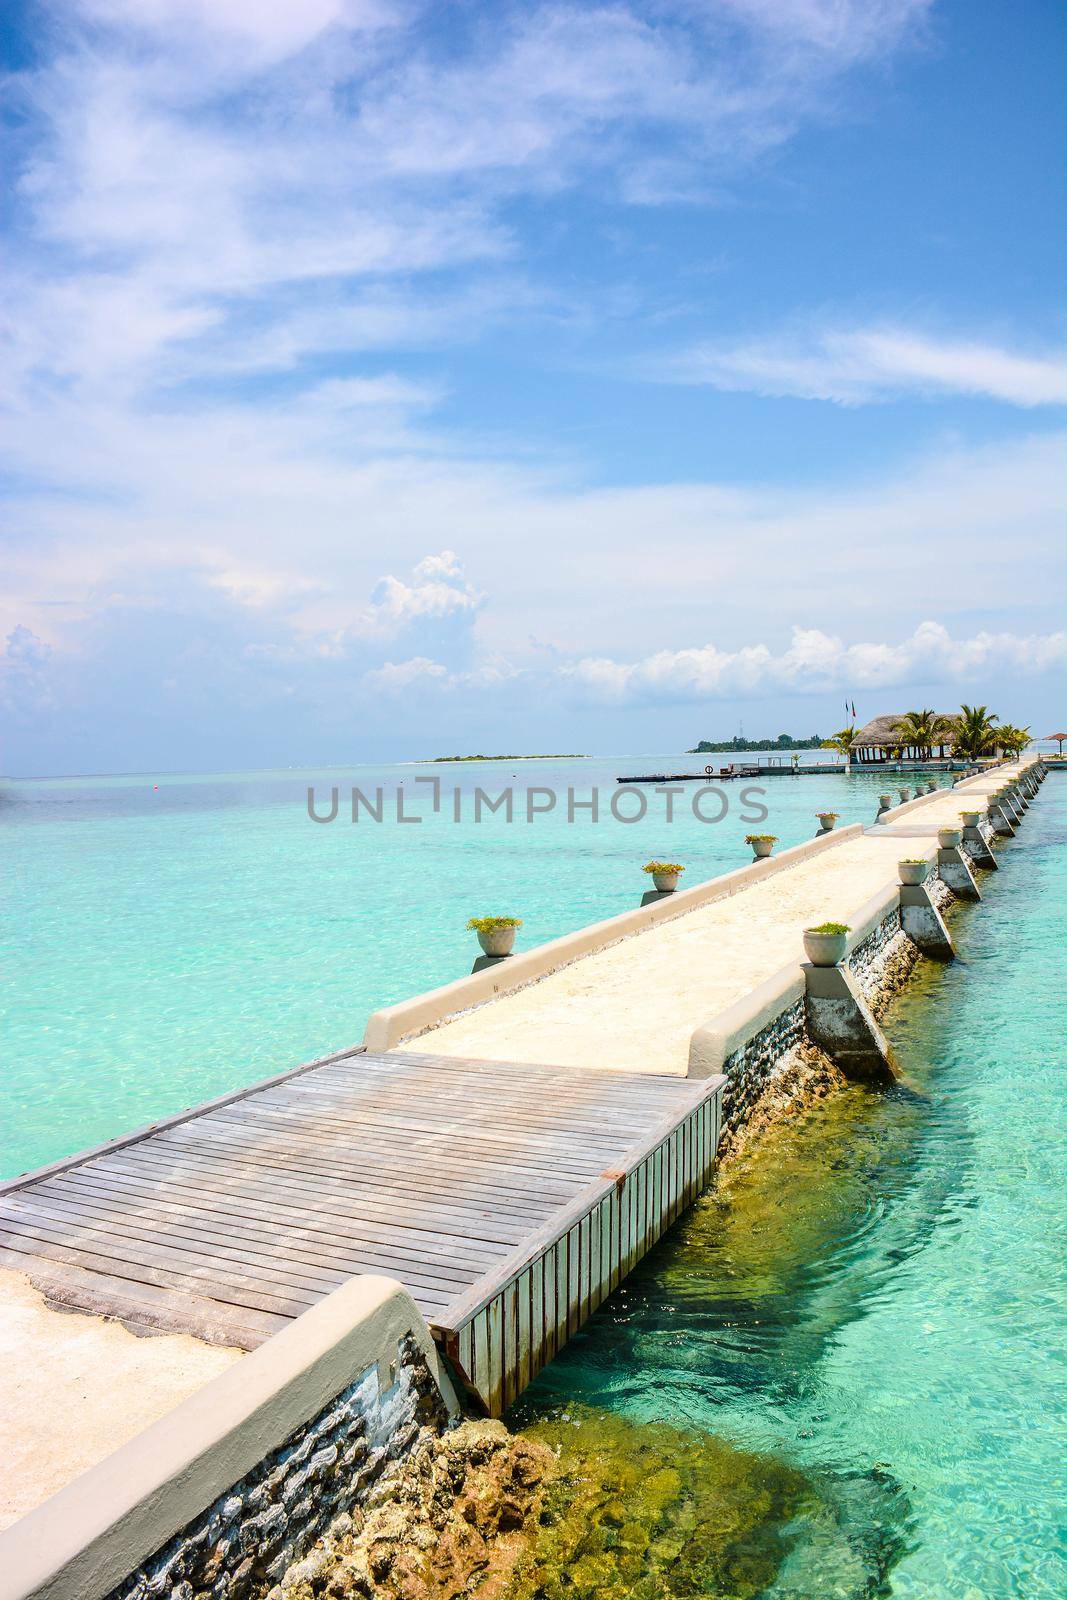 backgrounds maldives atoll by iacobino